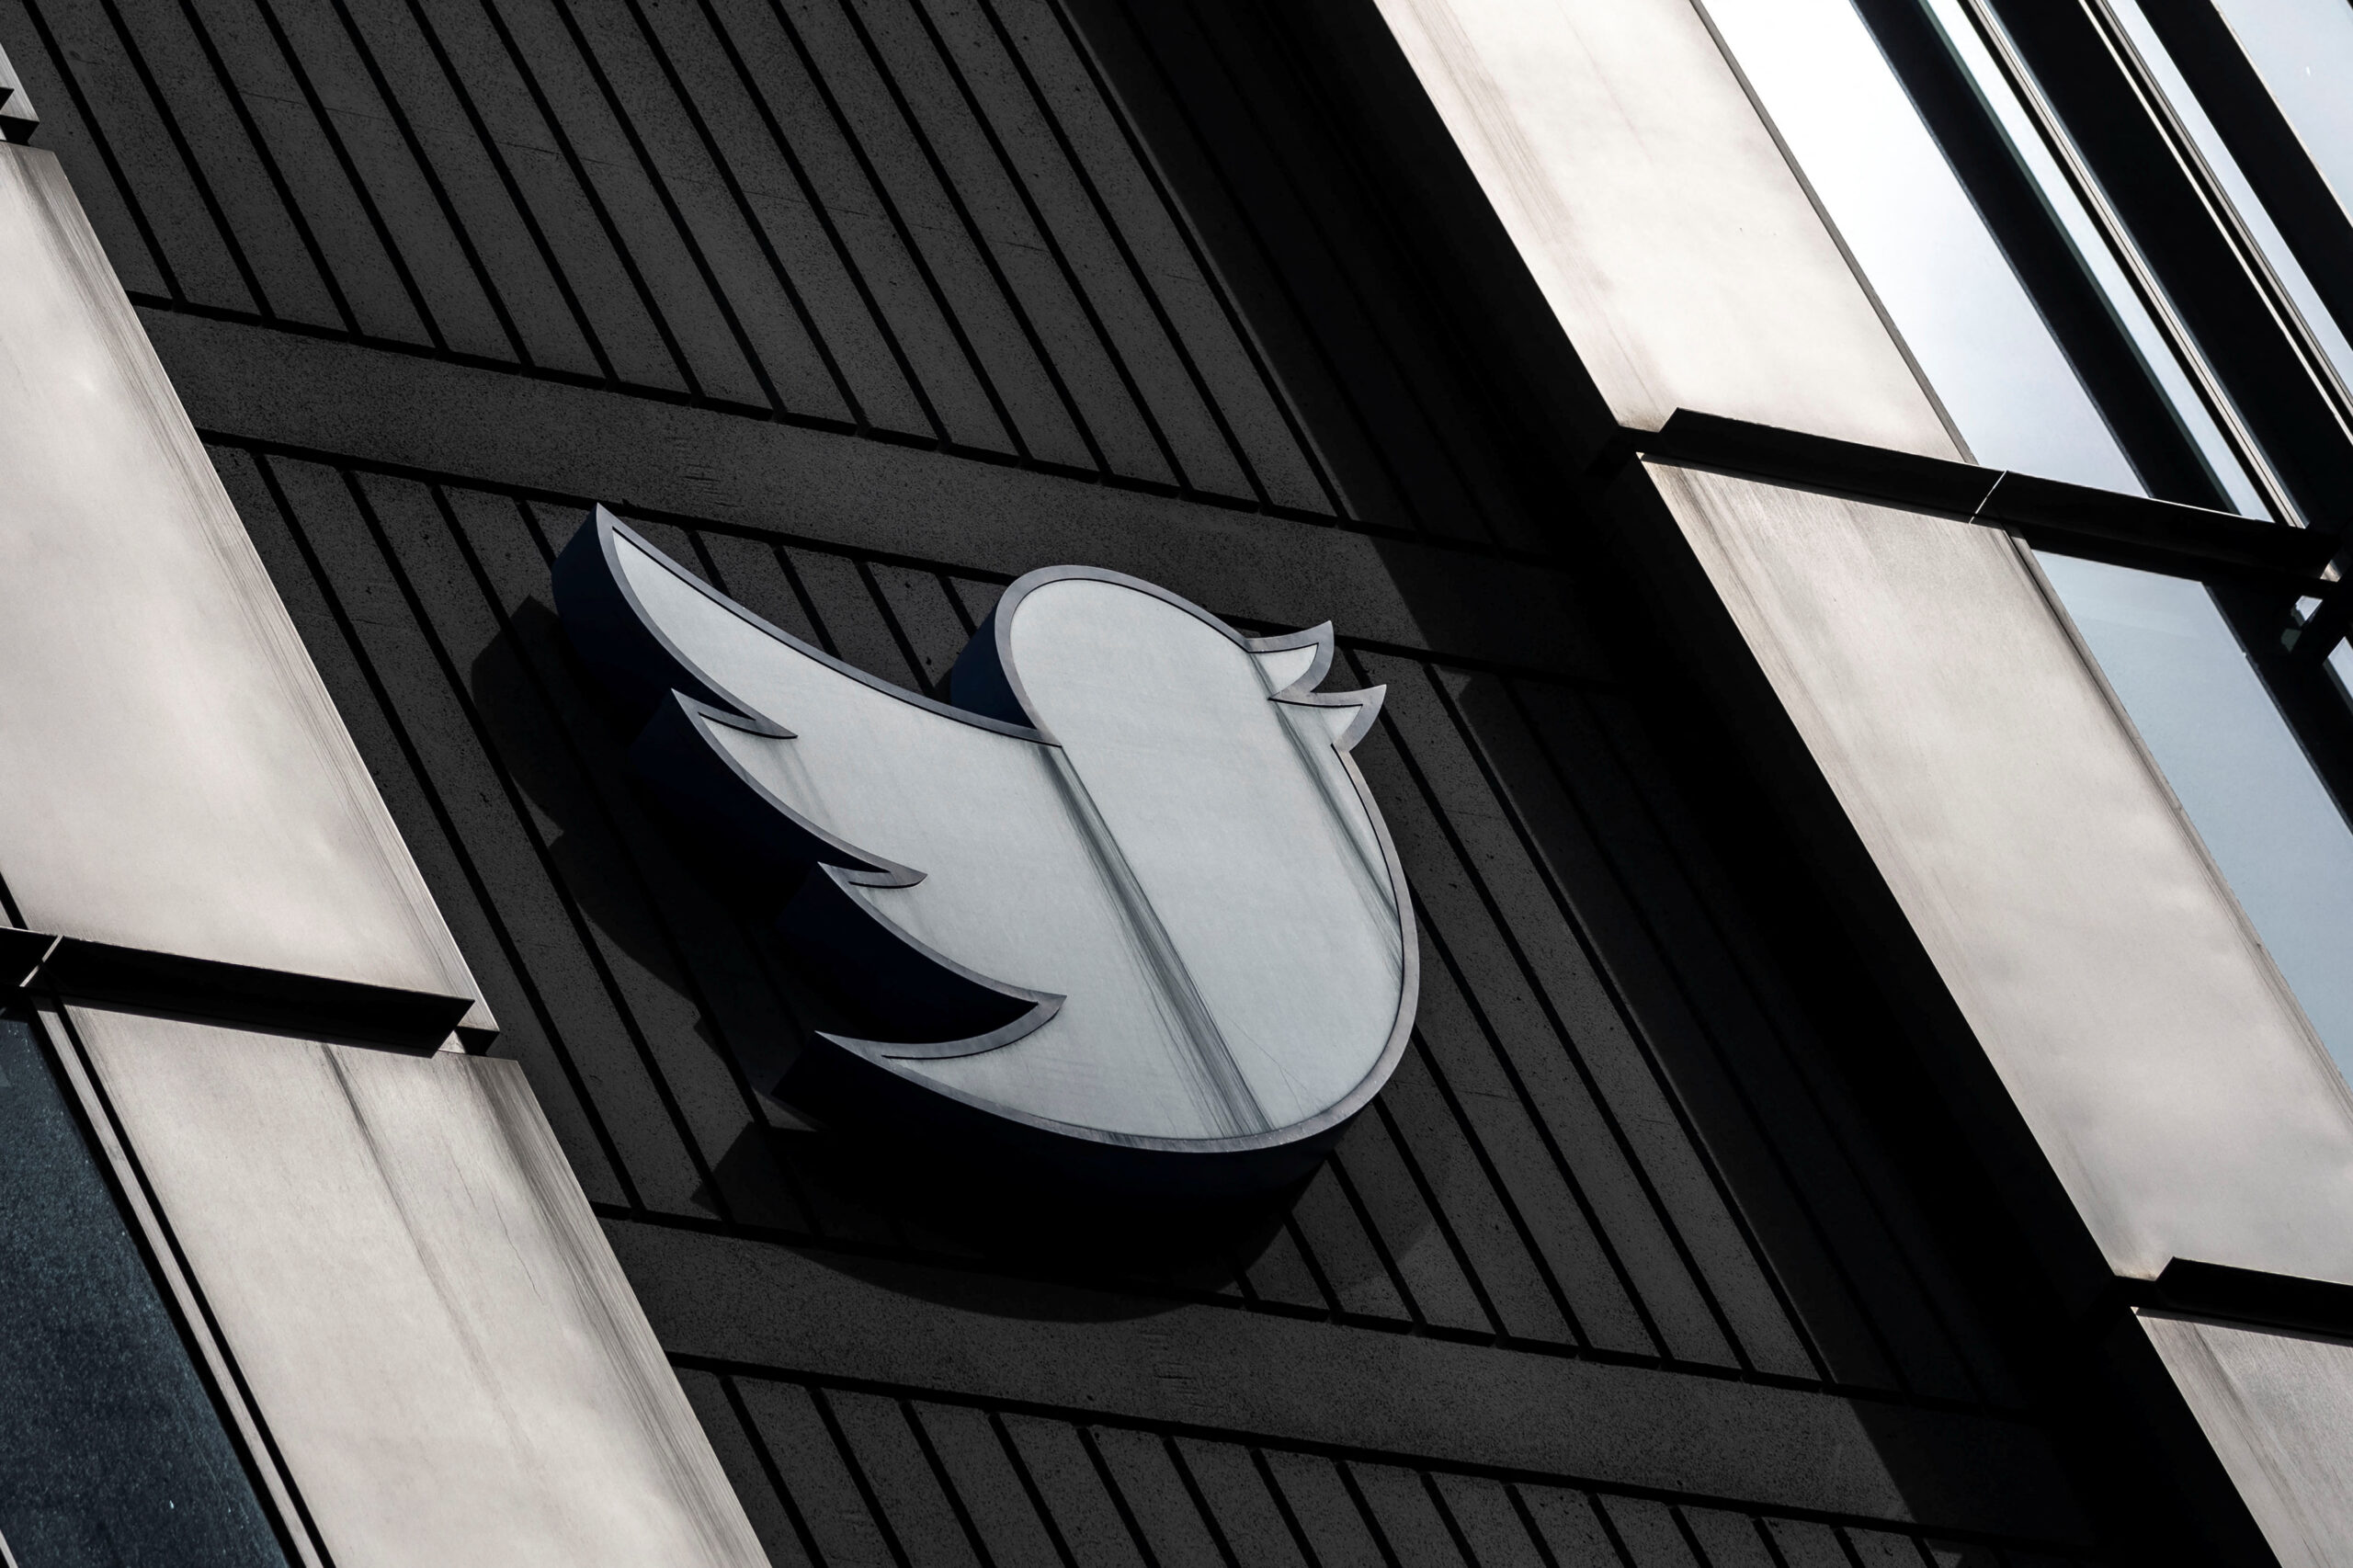 Twitter được cho là ngừng xác minh trả phí cho đến sau kỳ thi giữa kỳ của Hoa Kỳ